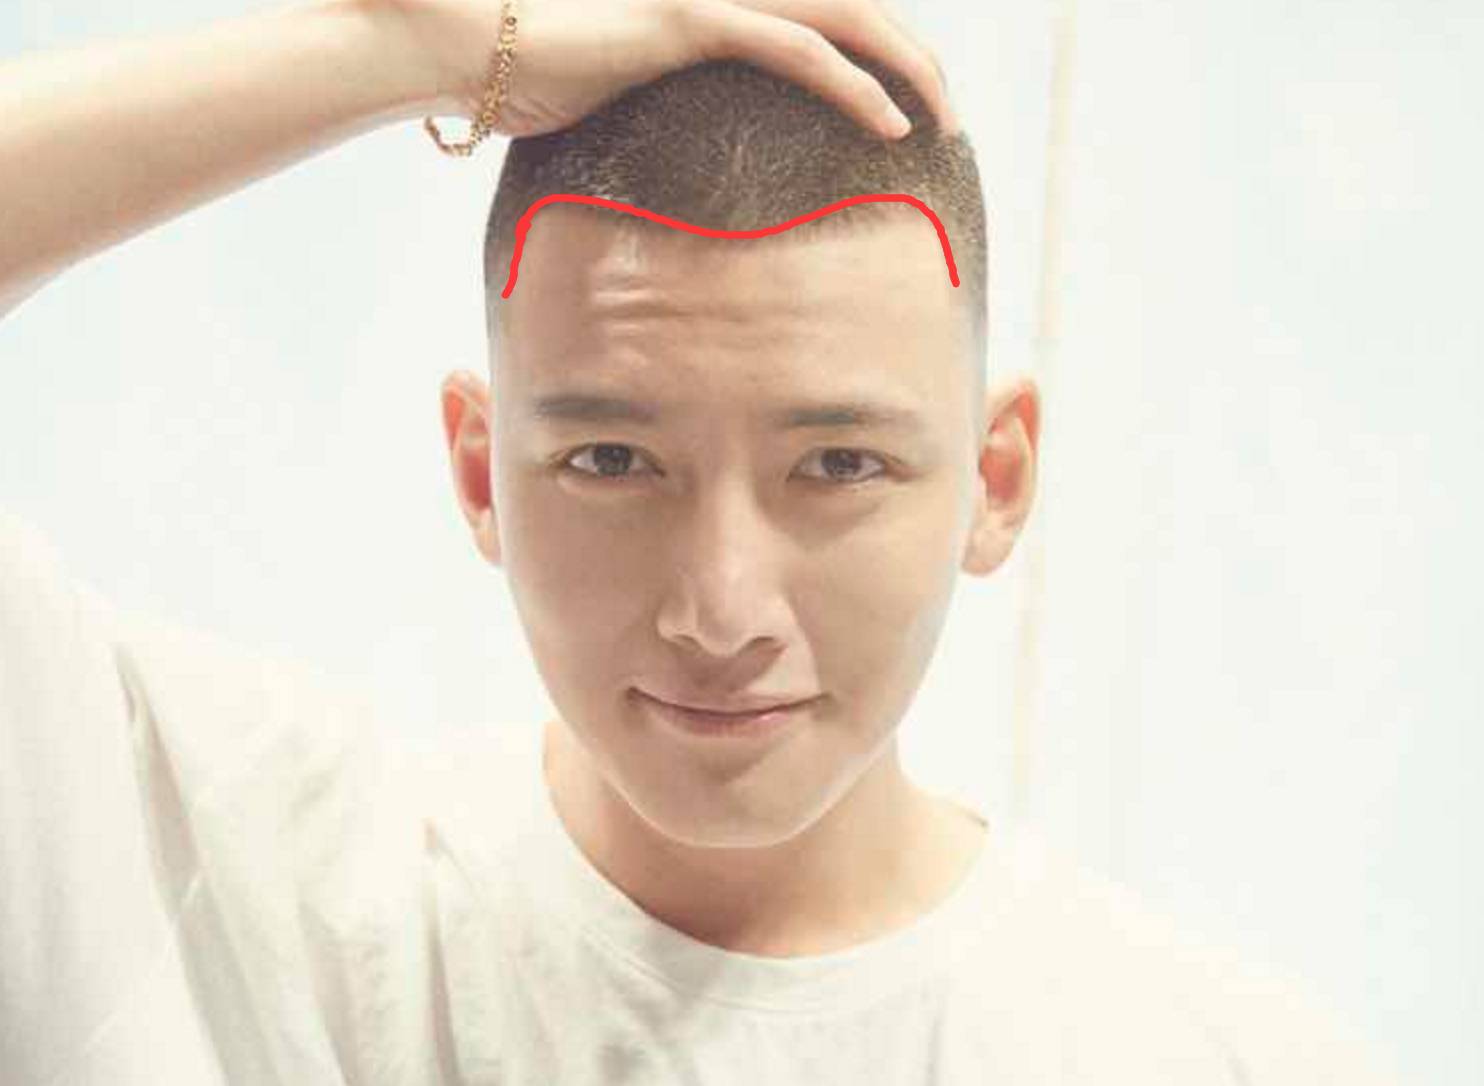 不过仔细一看,池昌旭的额头属于m型发际线,这种发际线的男生留寸头很